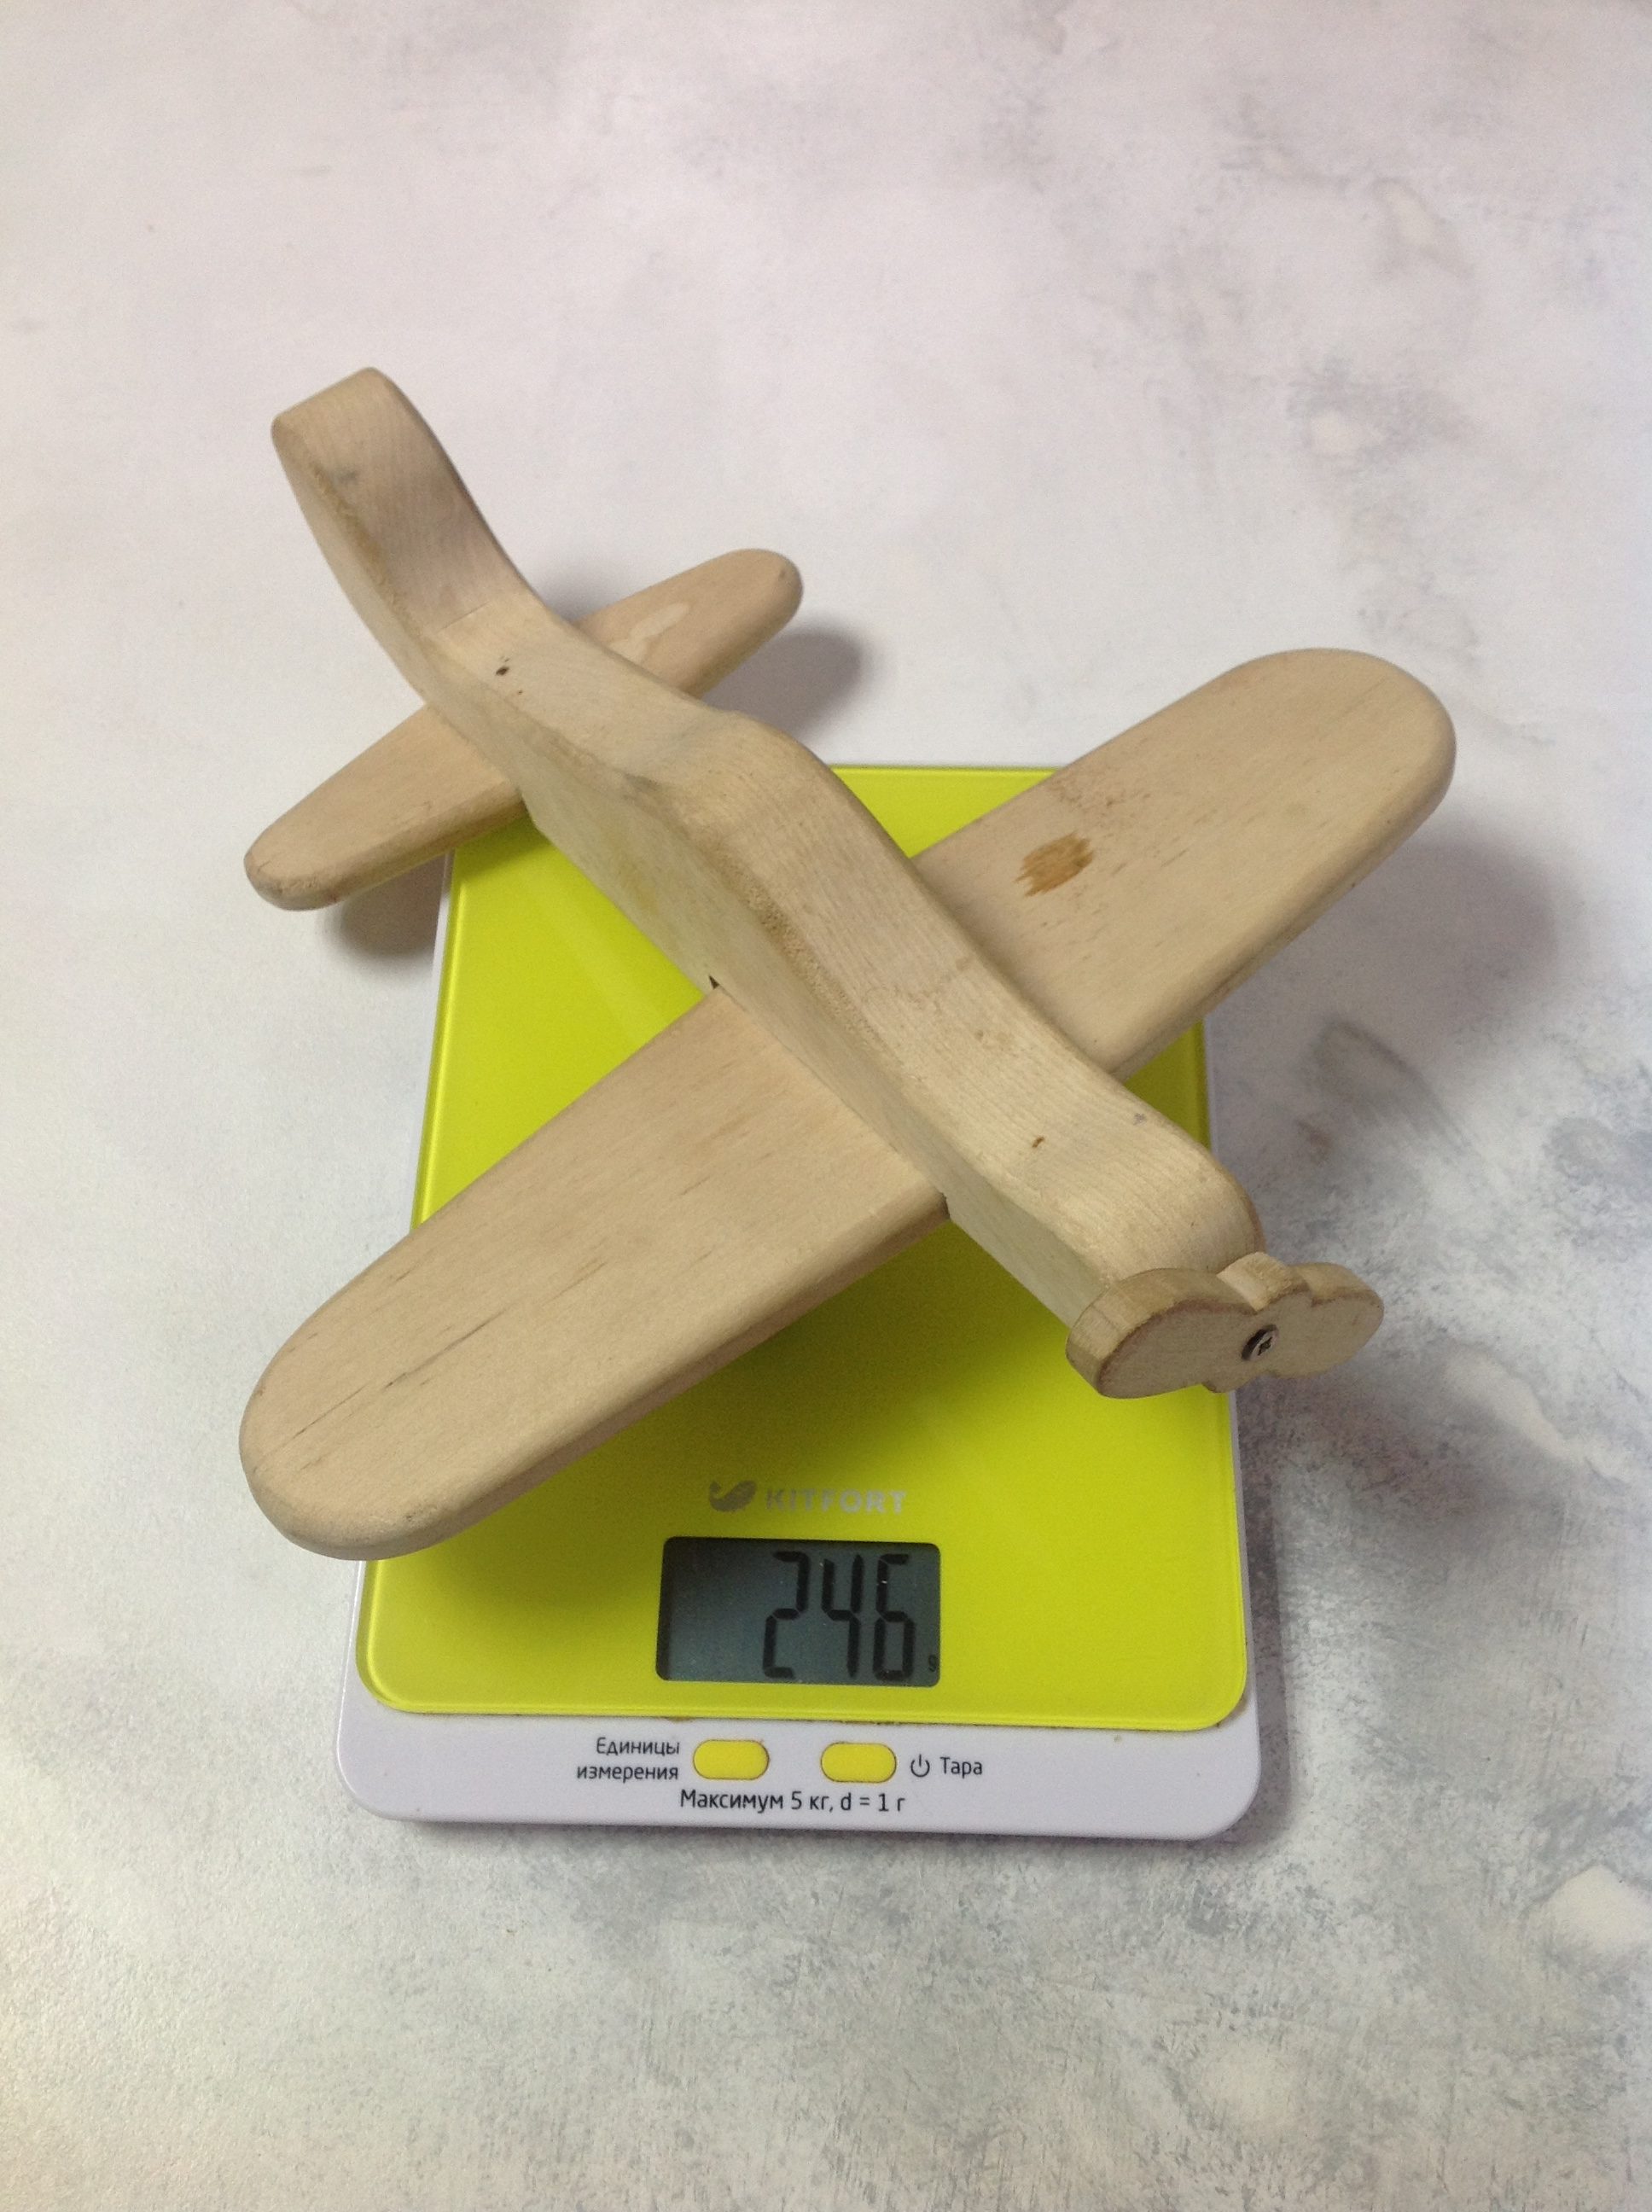 Сколько весит самолет игрушечный деревянный?